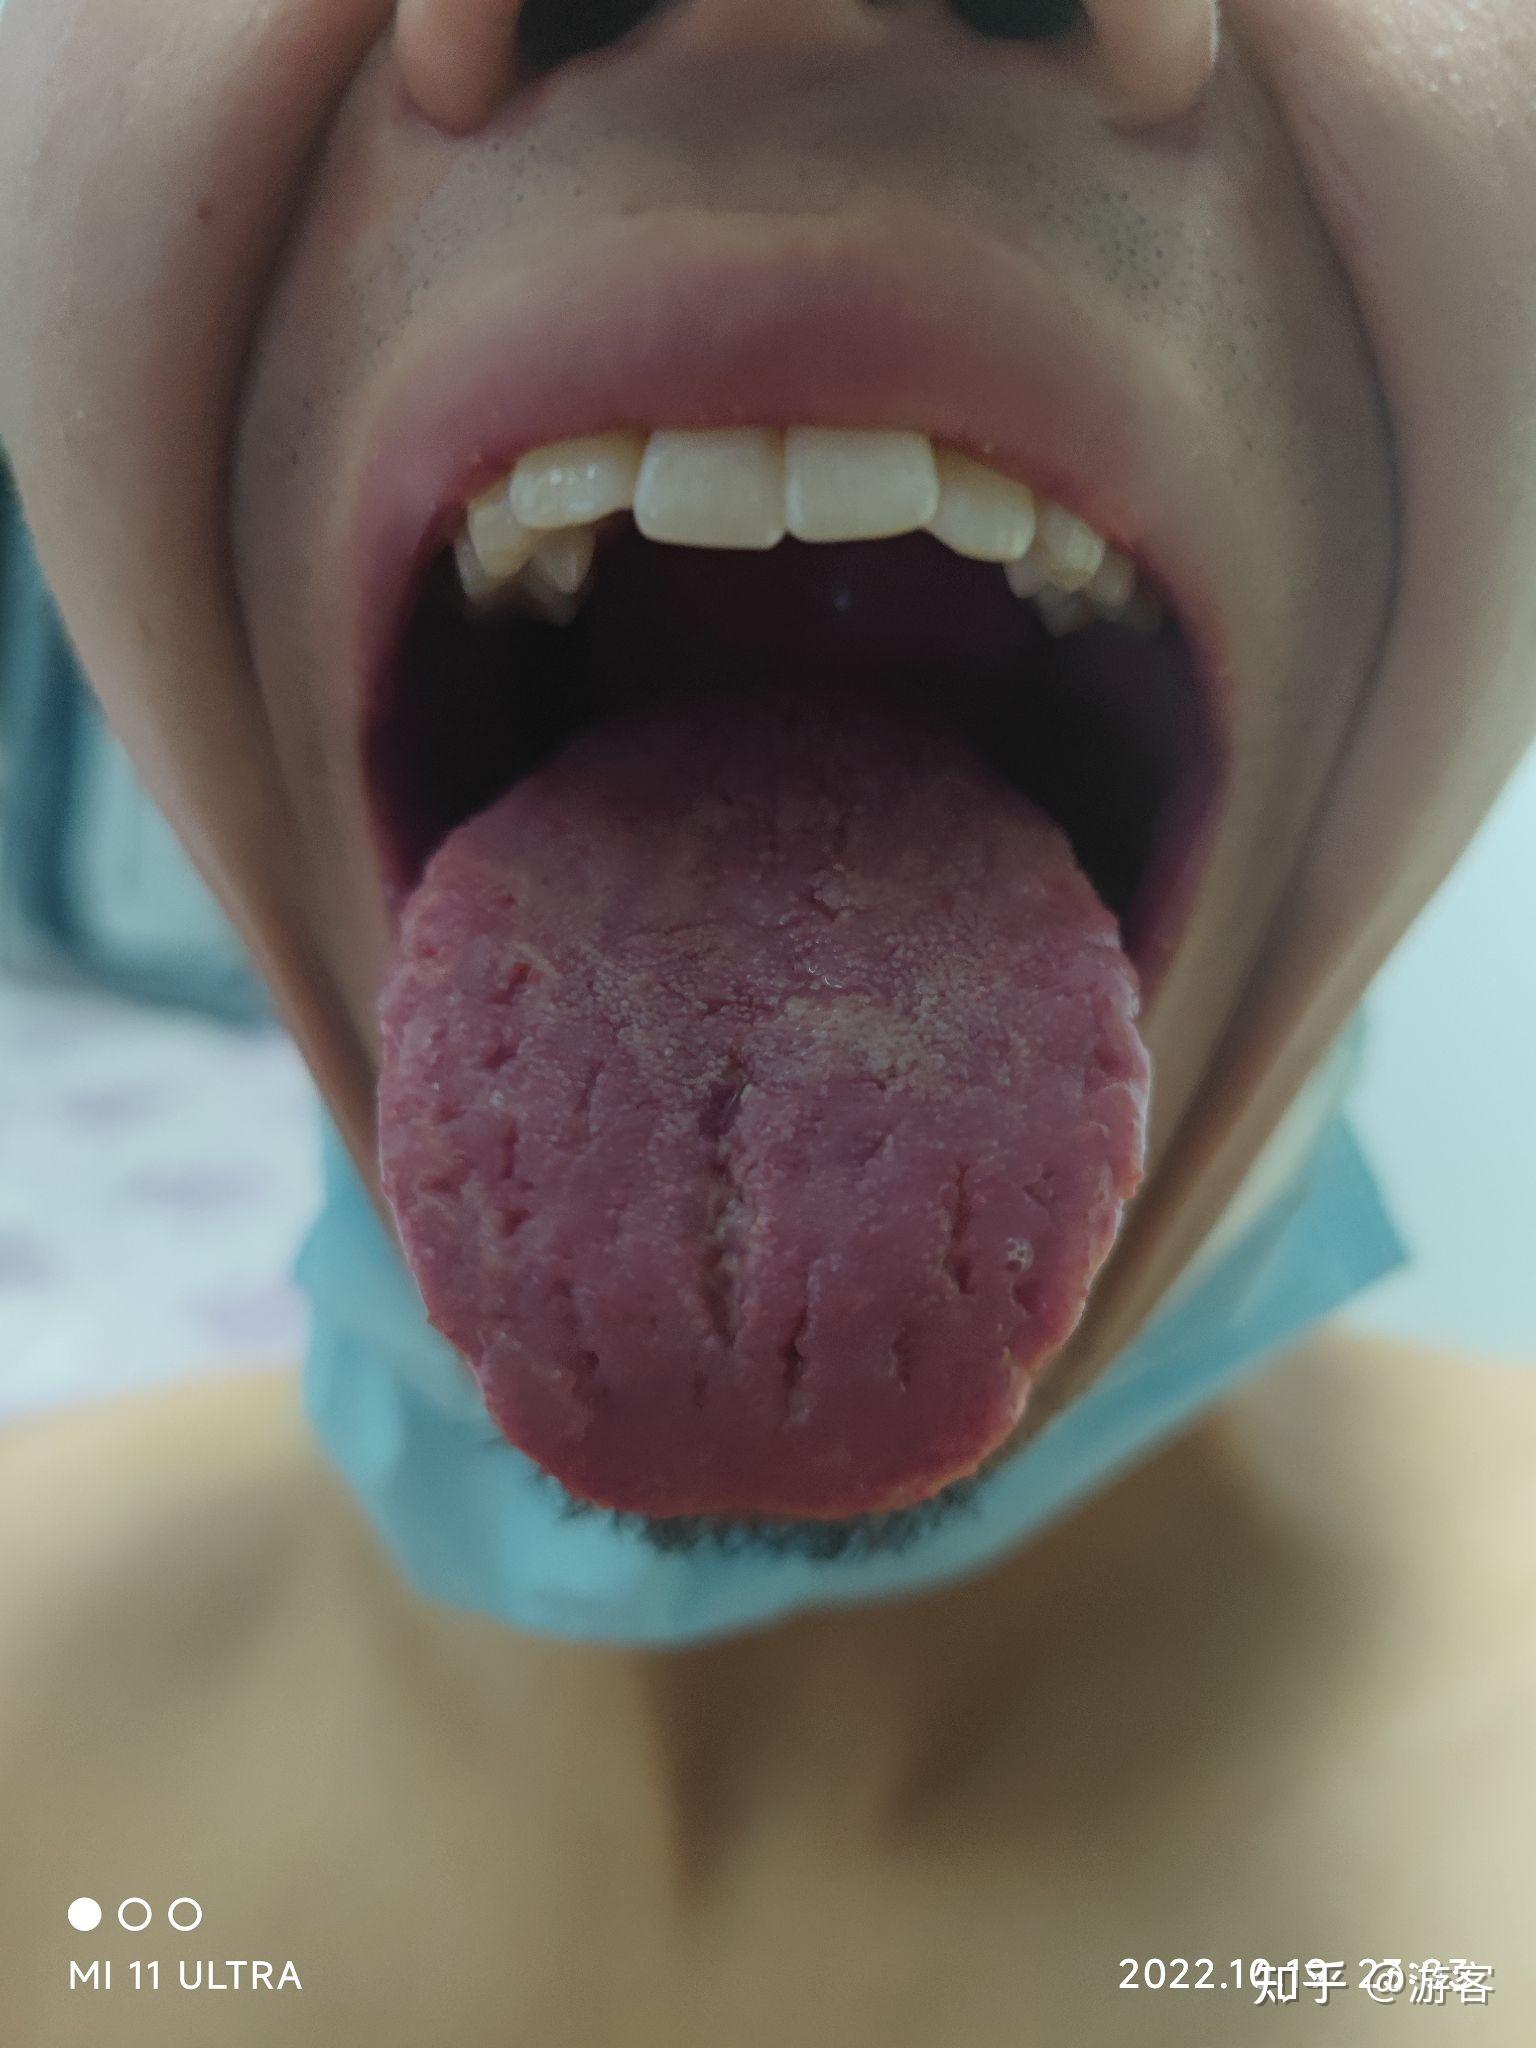 【病例解答】齿痕舌，裂纹，舌像破了似的总有辣丝丝的，牙总咬到舌两侧和前面难受。一遇凉就感冒，咳嗽，总有黄痰